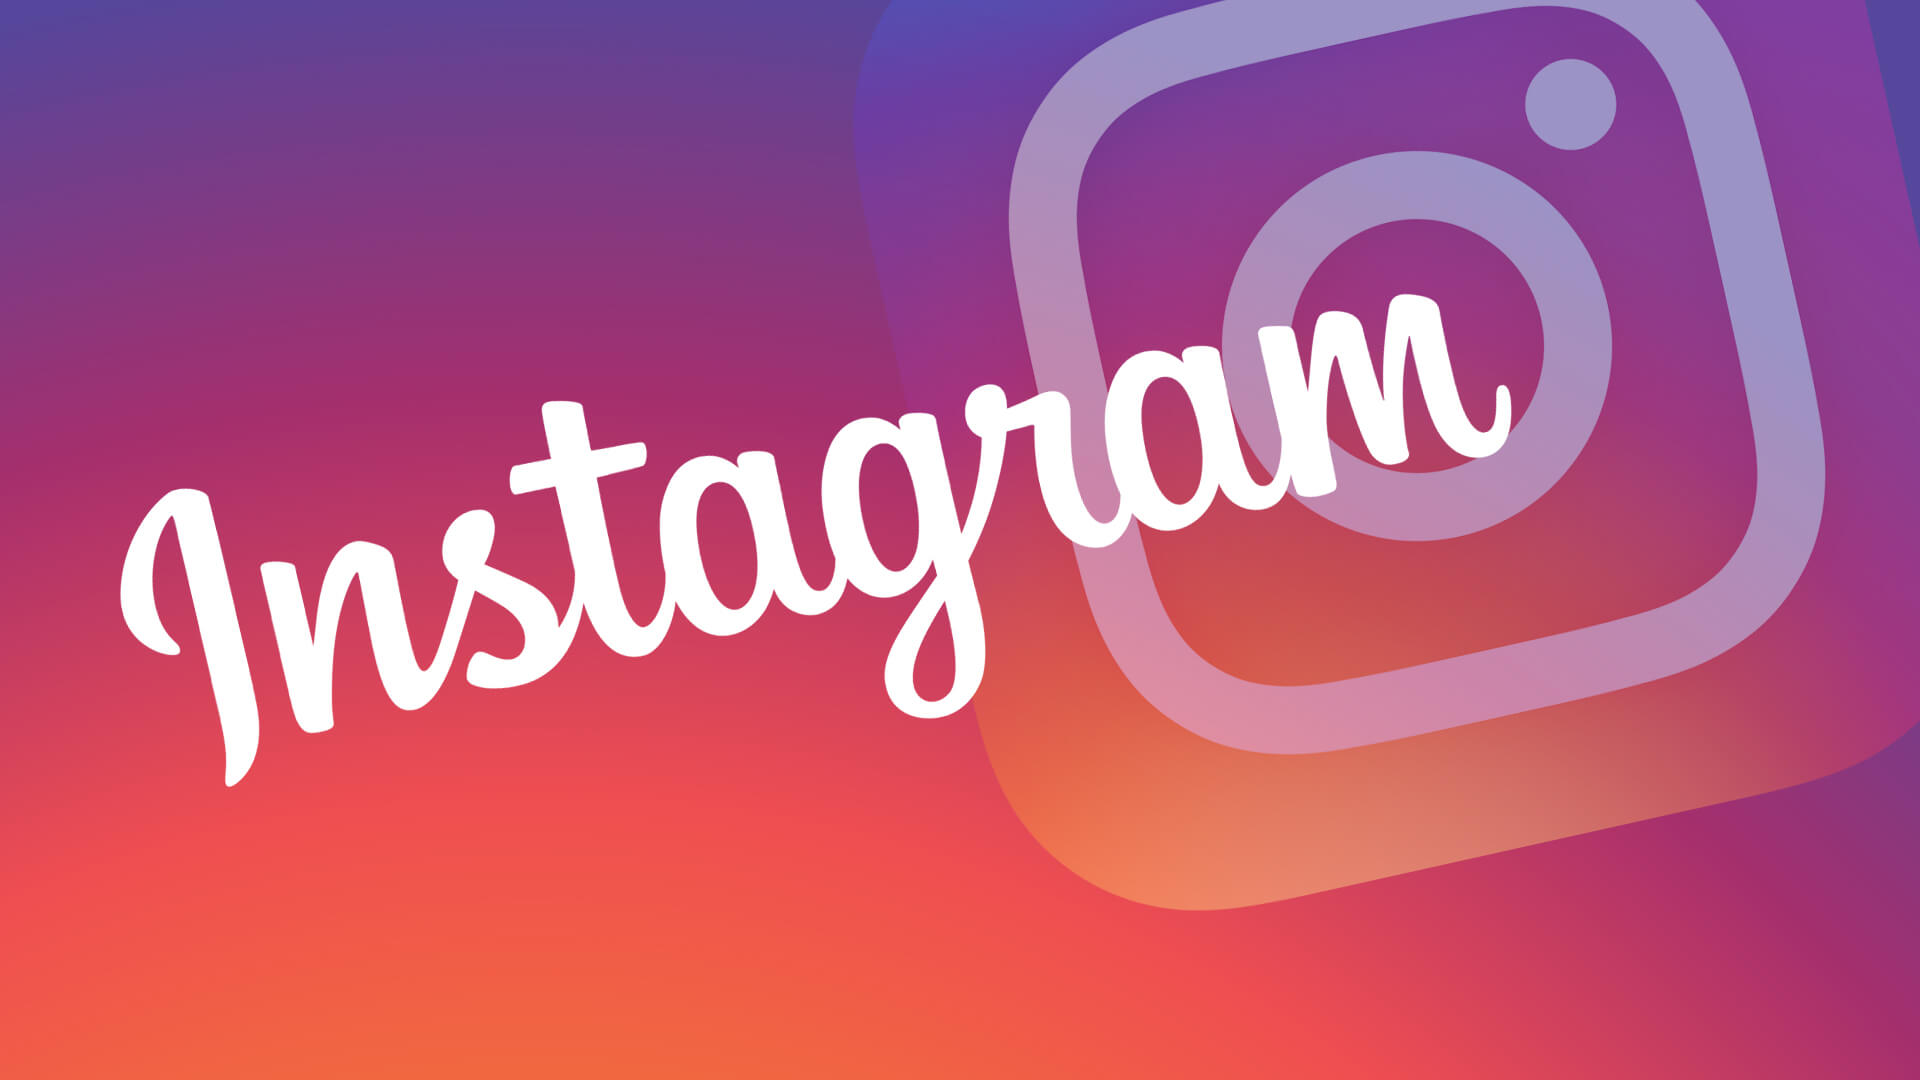 Instagram chia sẻ mẹo để tối ưu tương tác trên Stories